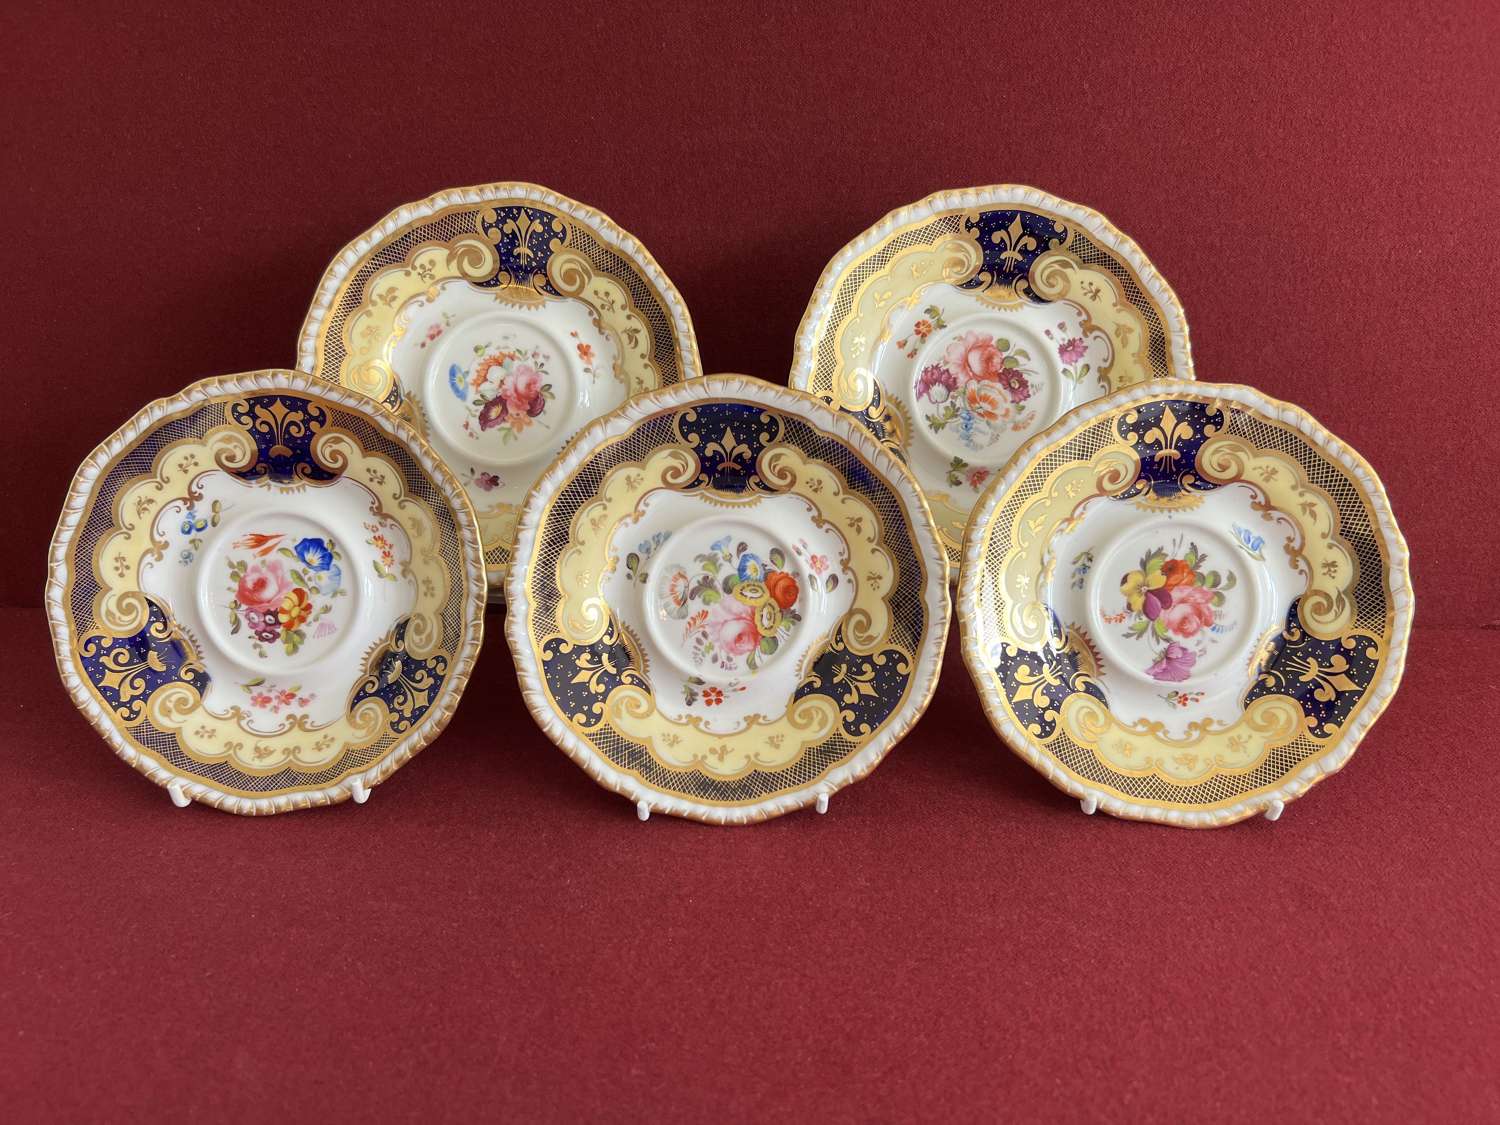 Five H & R Daniel Porcelain Saucers c.1825 Pattern 4058 Second Gadroon